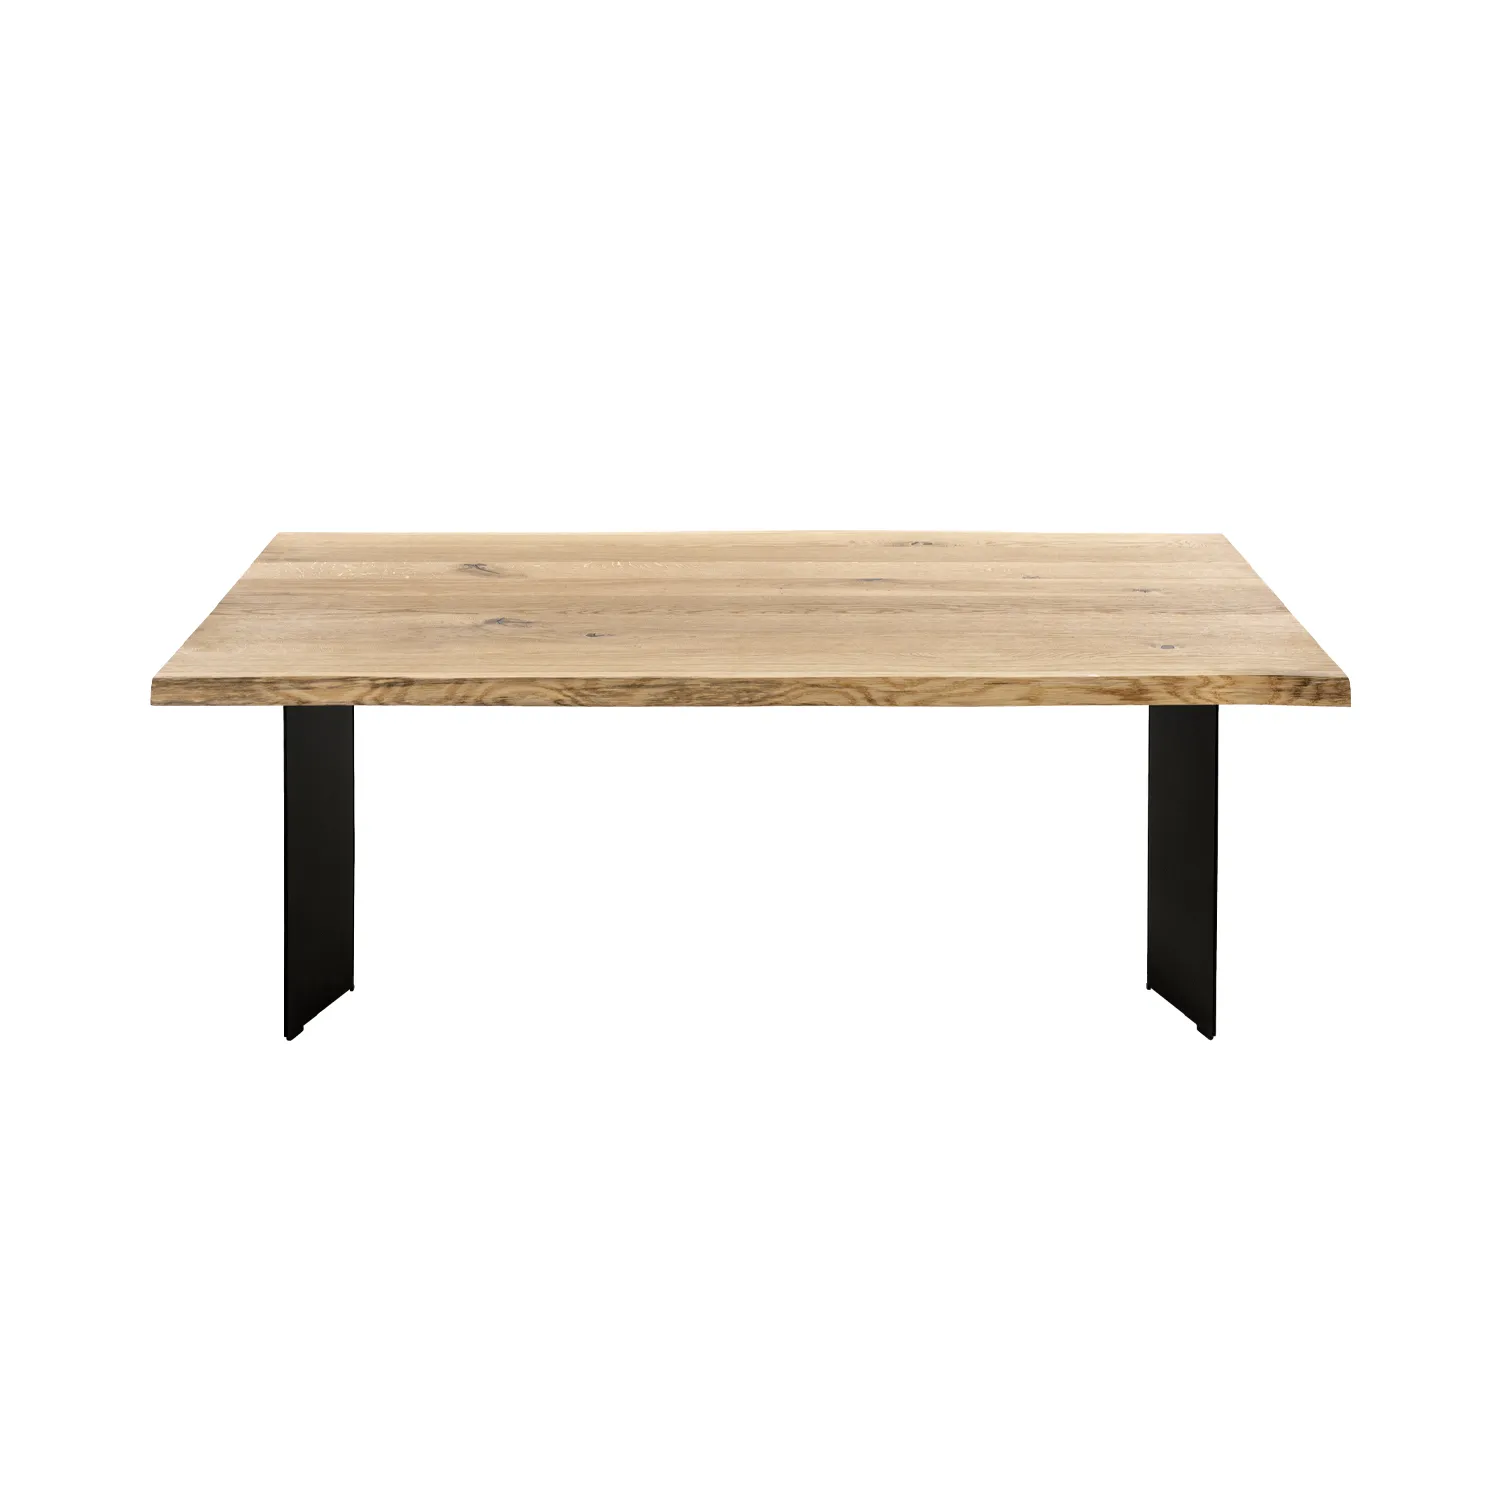 Holzbohlentisch aus Wildeiche mit Stahlwangengestell in schwarz